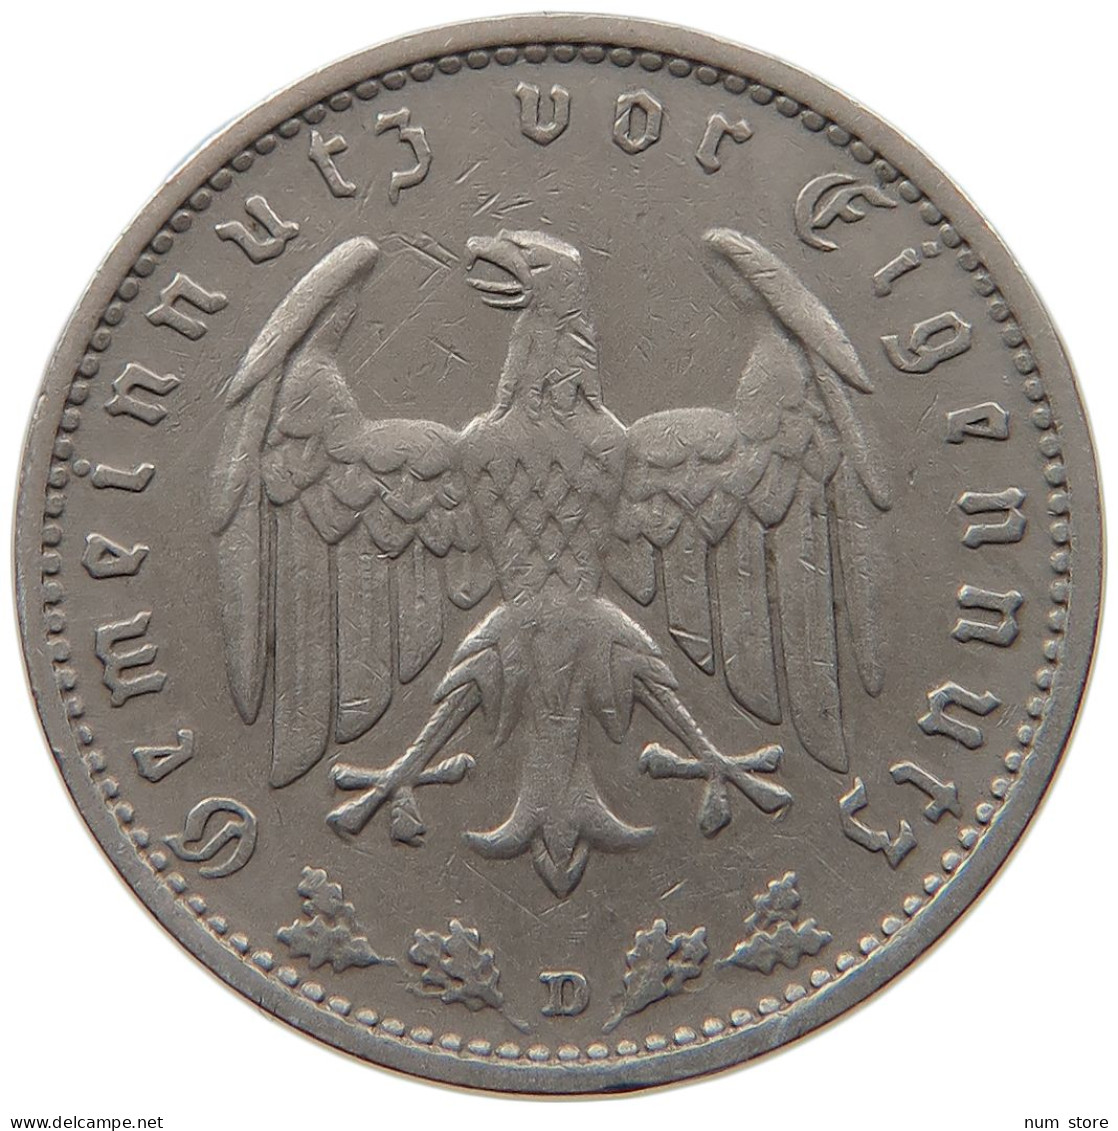 DRITTES REICH MARK 1934 D  #MA 099323 - 1 Reichsmark